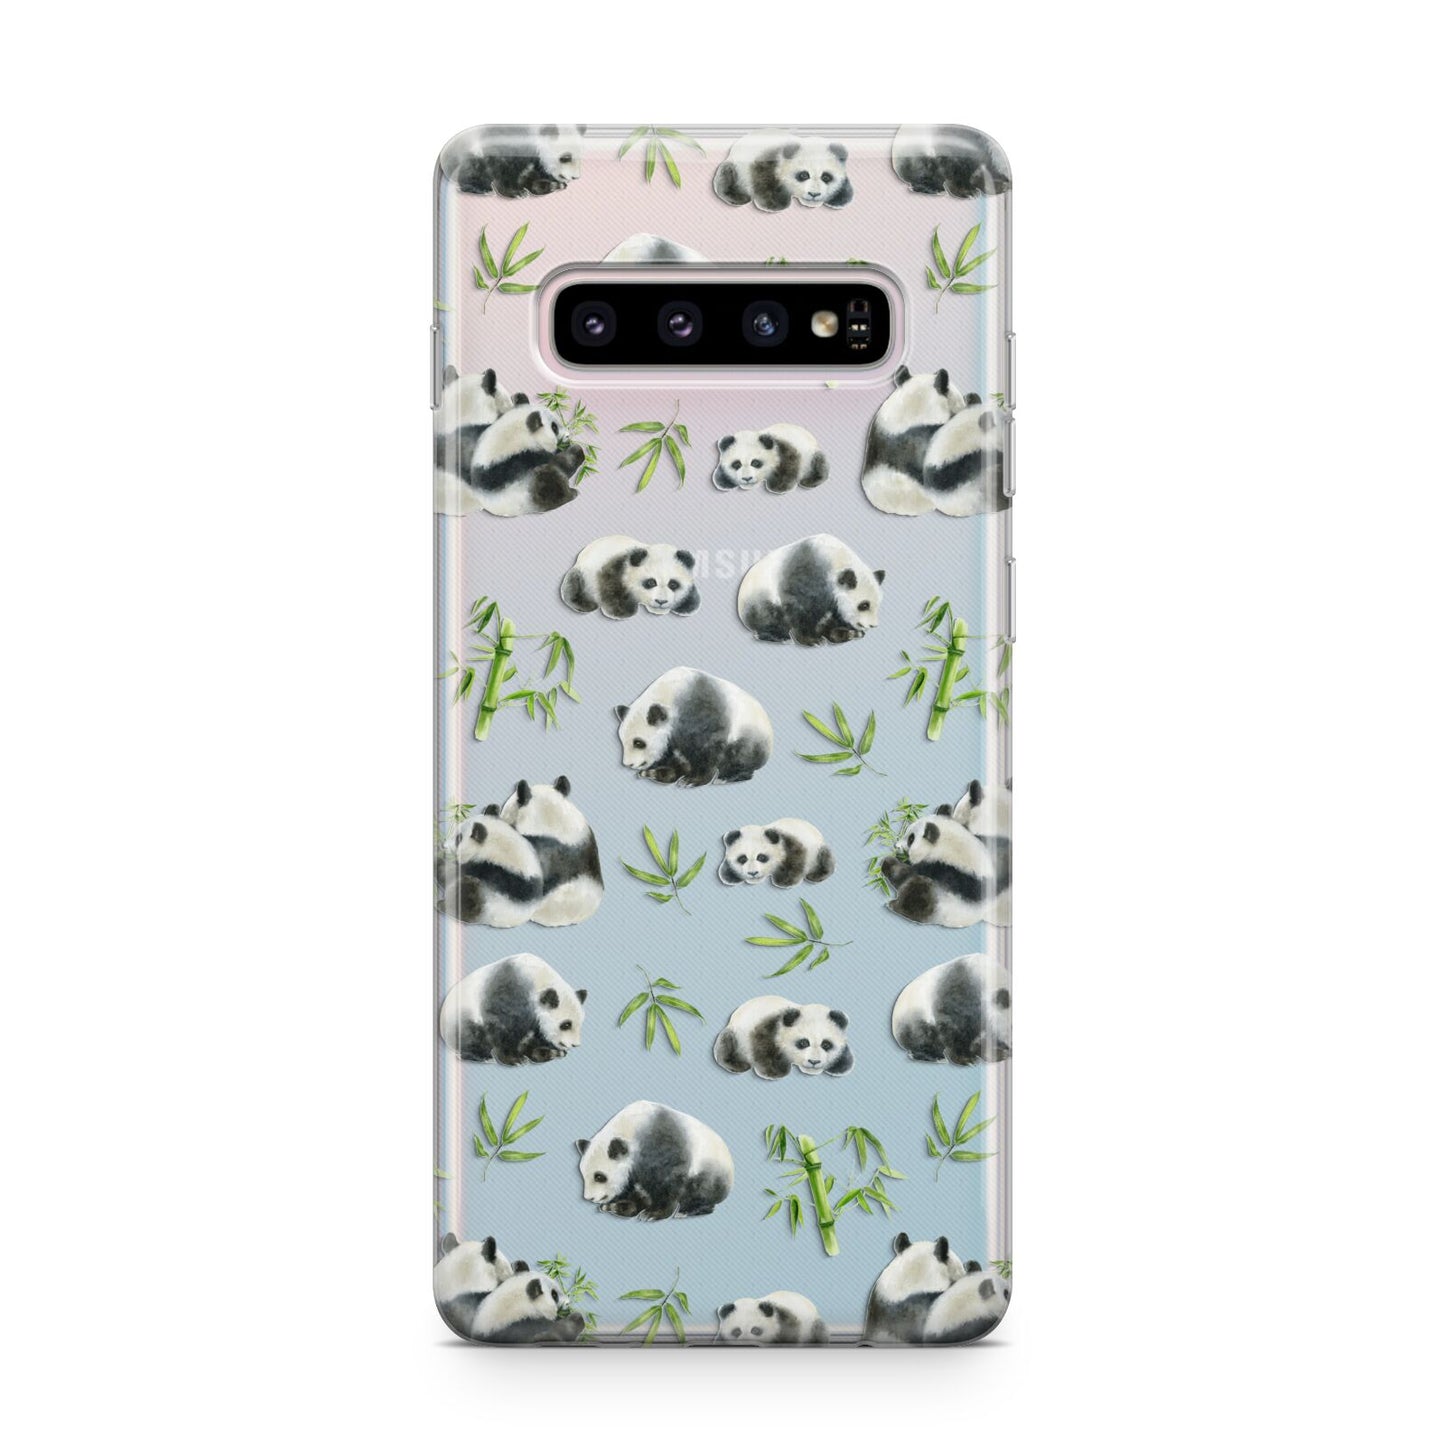 Panda Samsung Galaxy S10 Plus Case